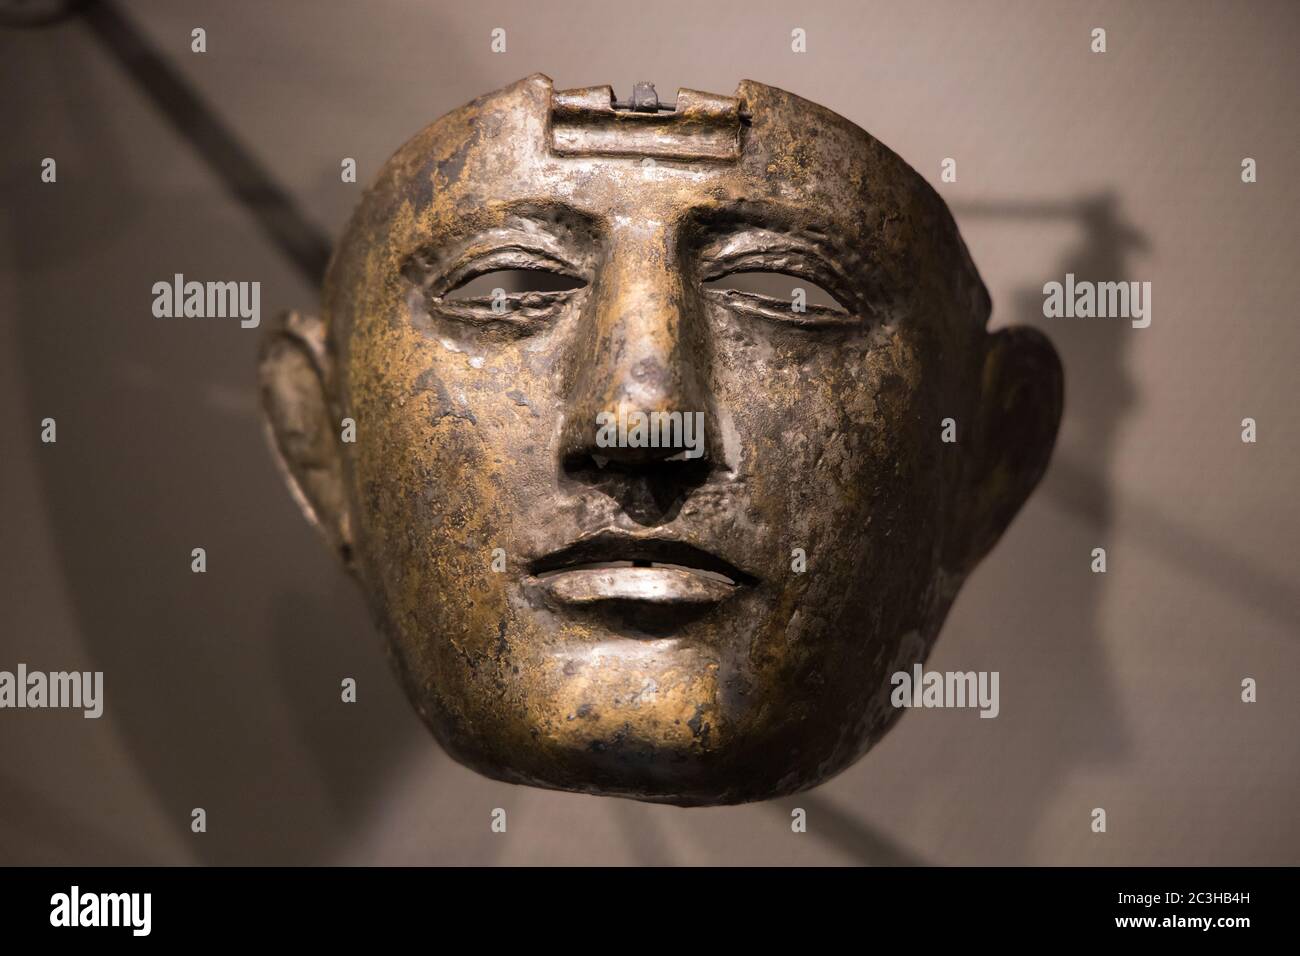 Leiden, Paesi Bassi - 04 GENNAIO 2020: Primo piano di una vecchia maschera visiera dell'antica Roma, trovata nei Paesi Bassi. Antico Impero Romano. In ferro Foto Stock